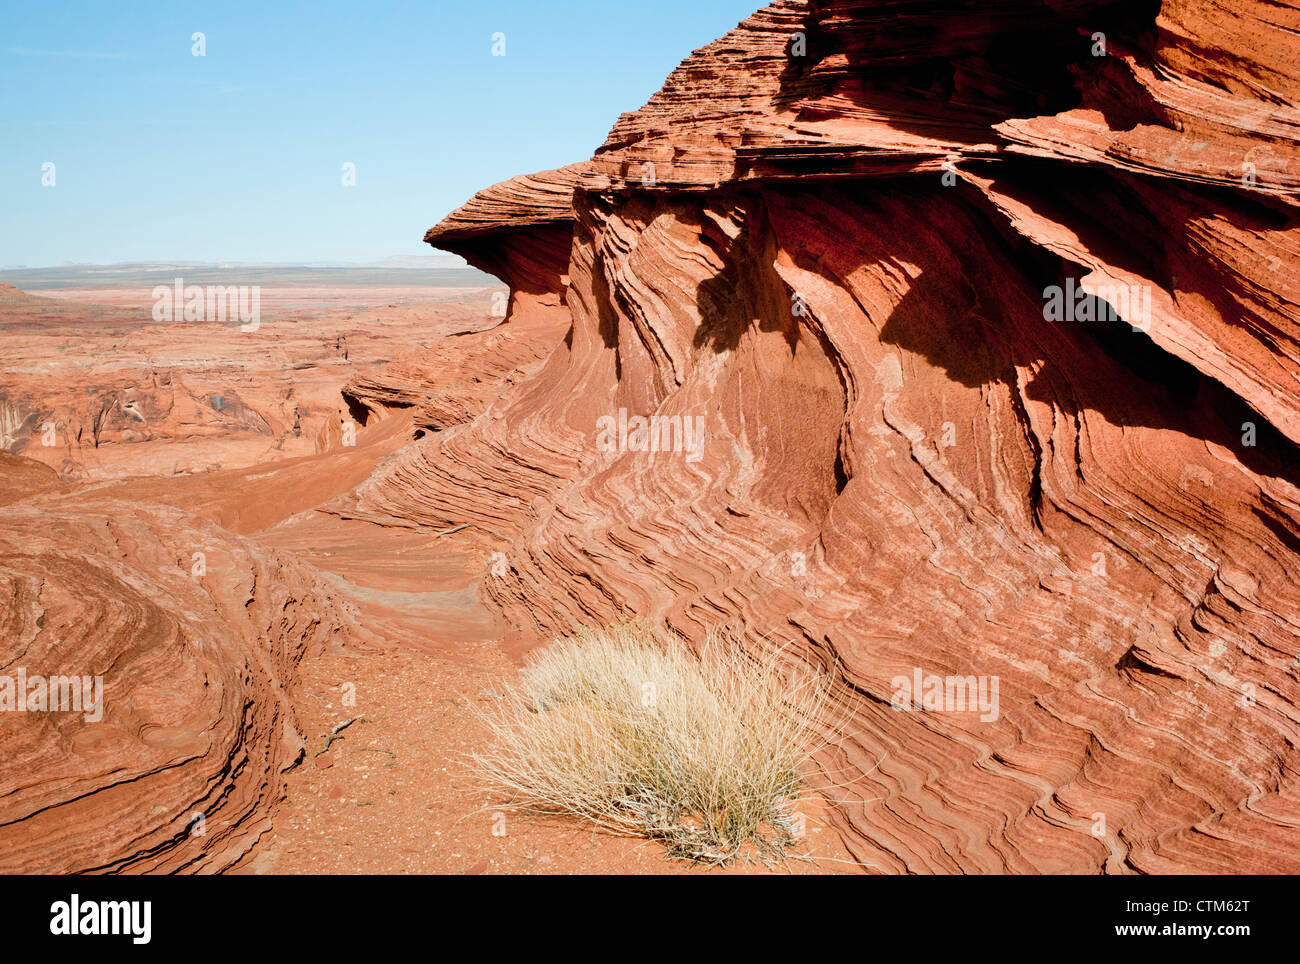 Unique Stratum In A Rock Formation; Arizona, United States of America Stock Photo